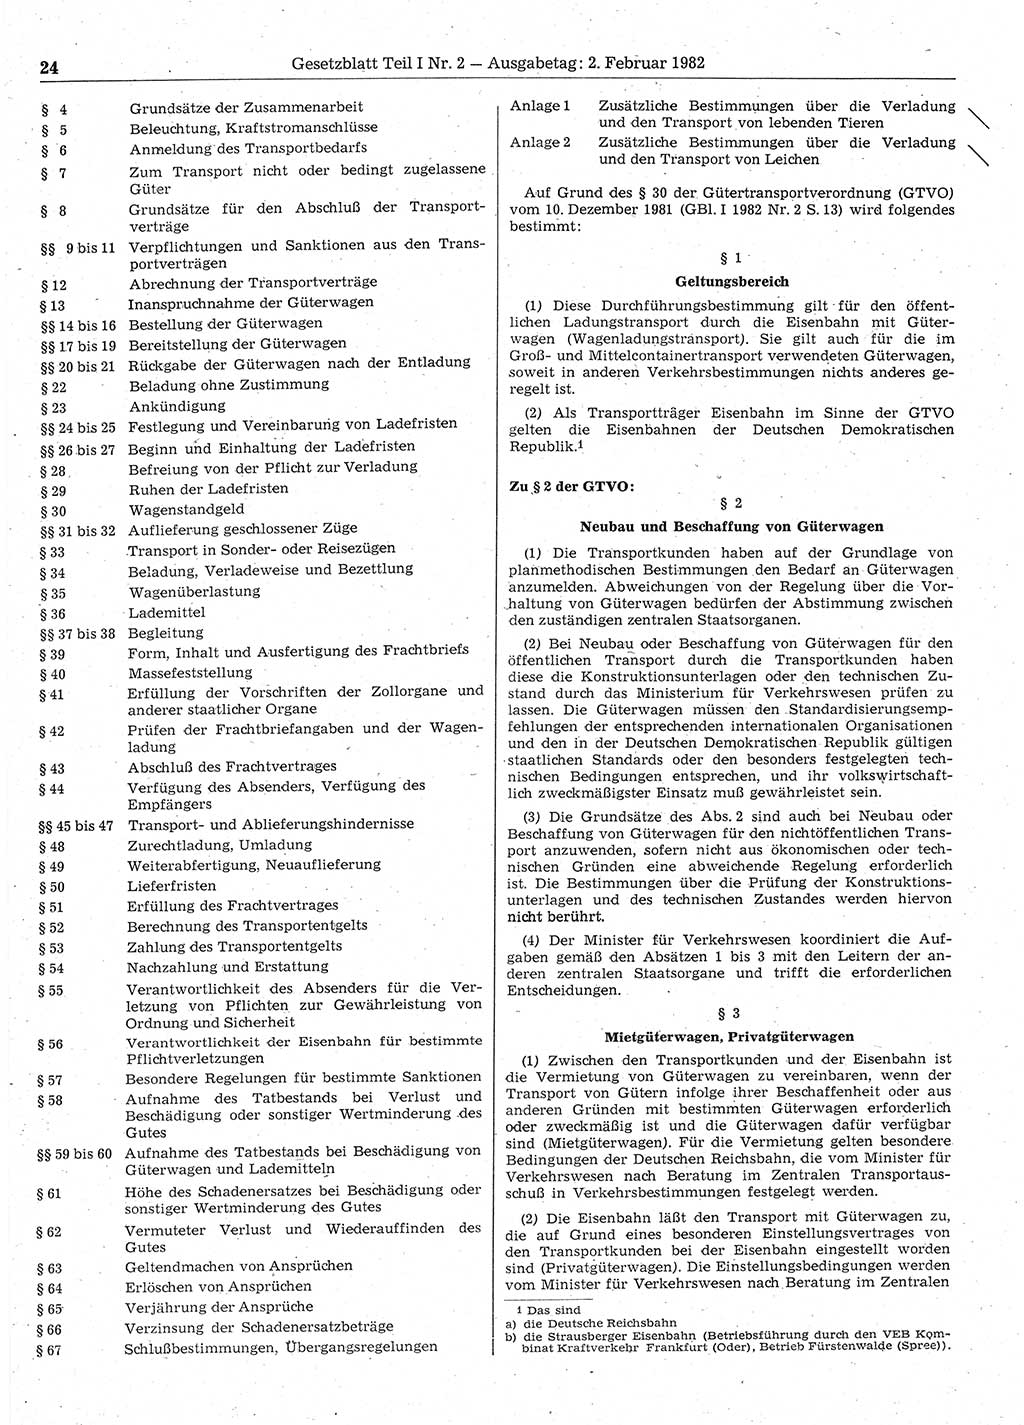 Gesetzblatt (GBl.) der Deutschen Demokratischen Republik (DDR) Teil Ⅰ 1982, Seite 24 (GBl. DDR Ⅰ 1982, S. 24)